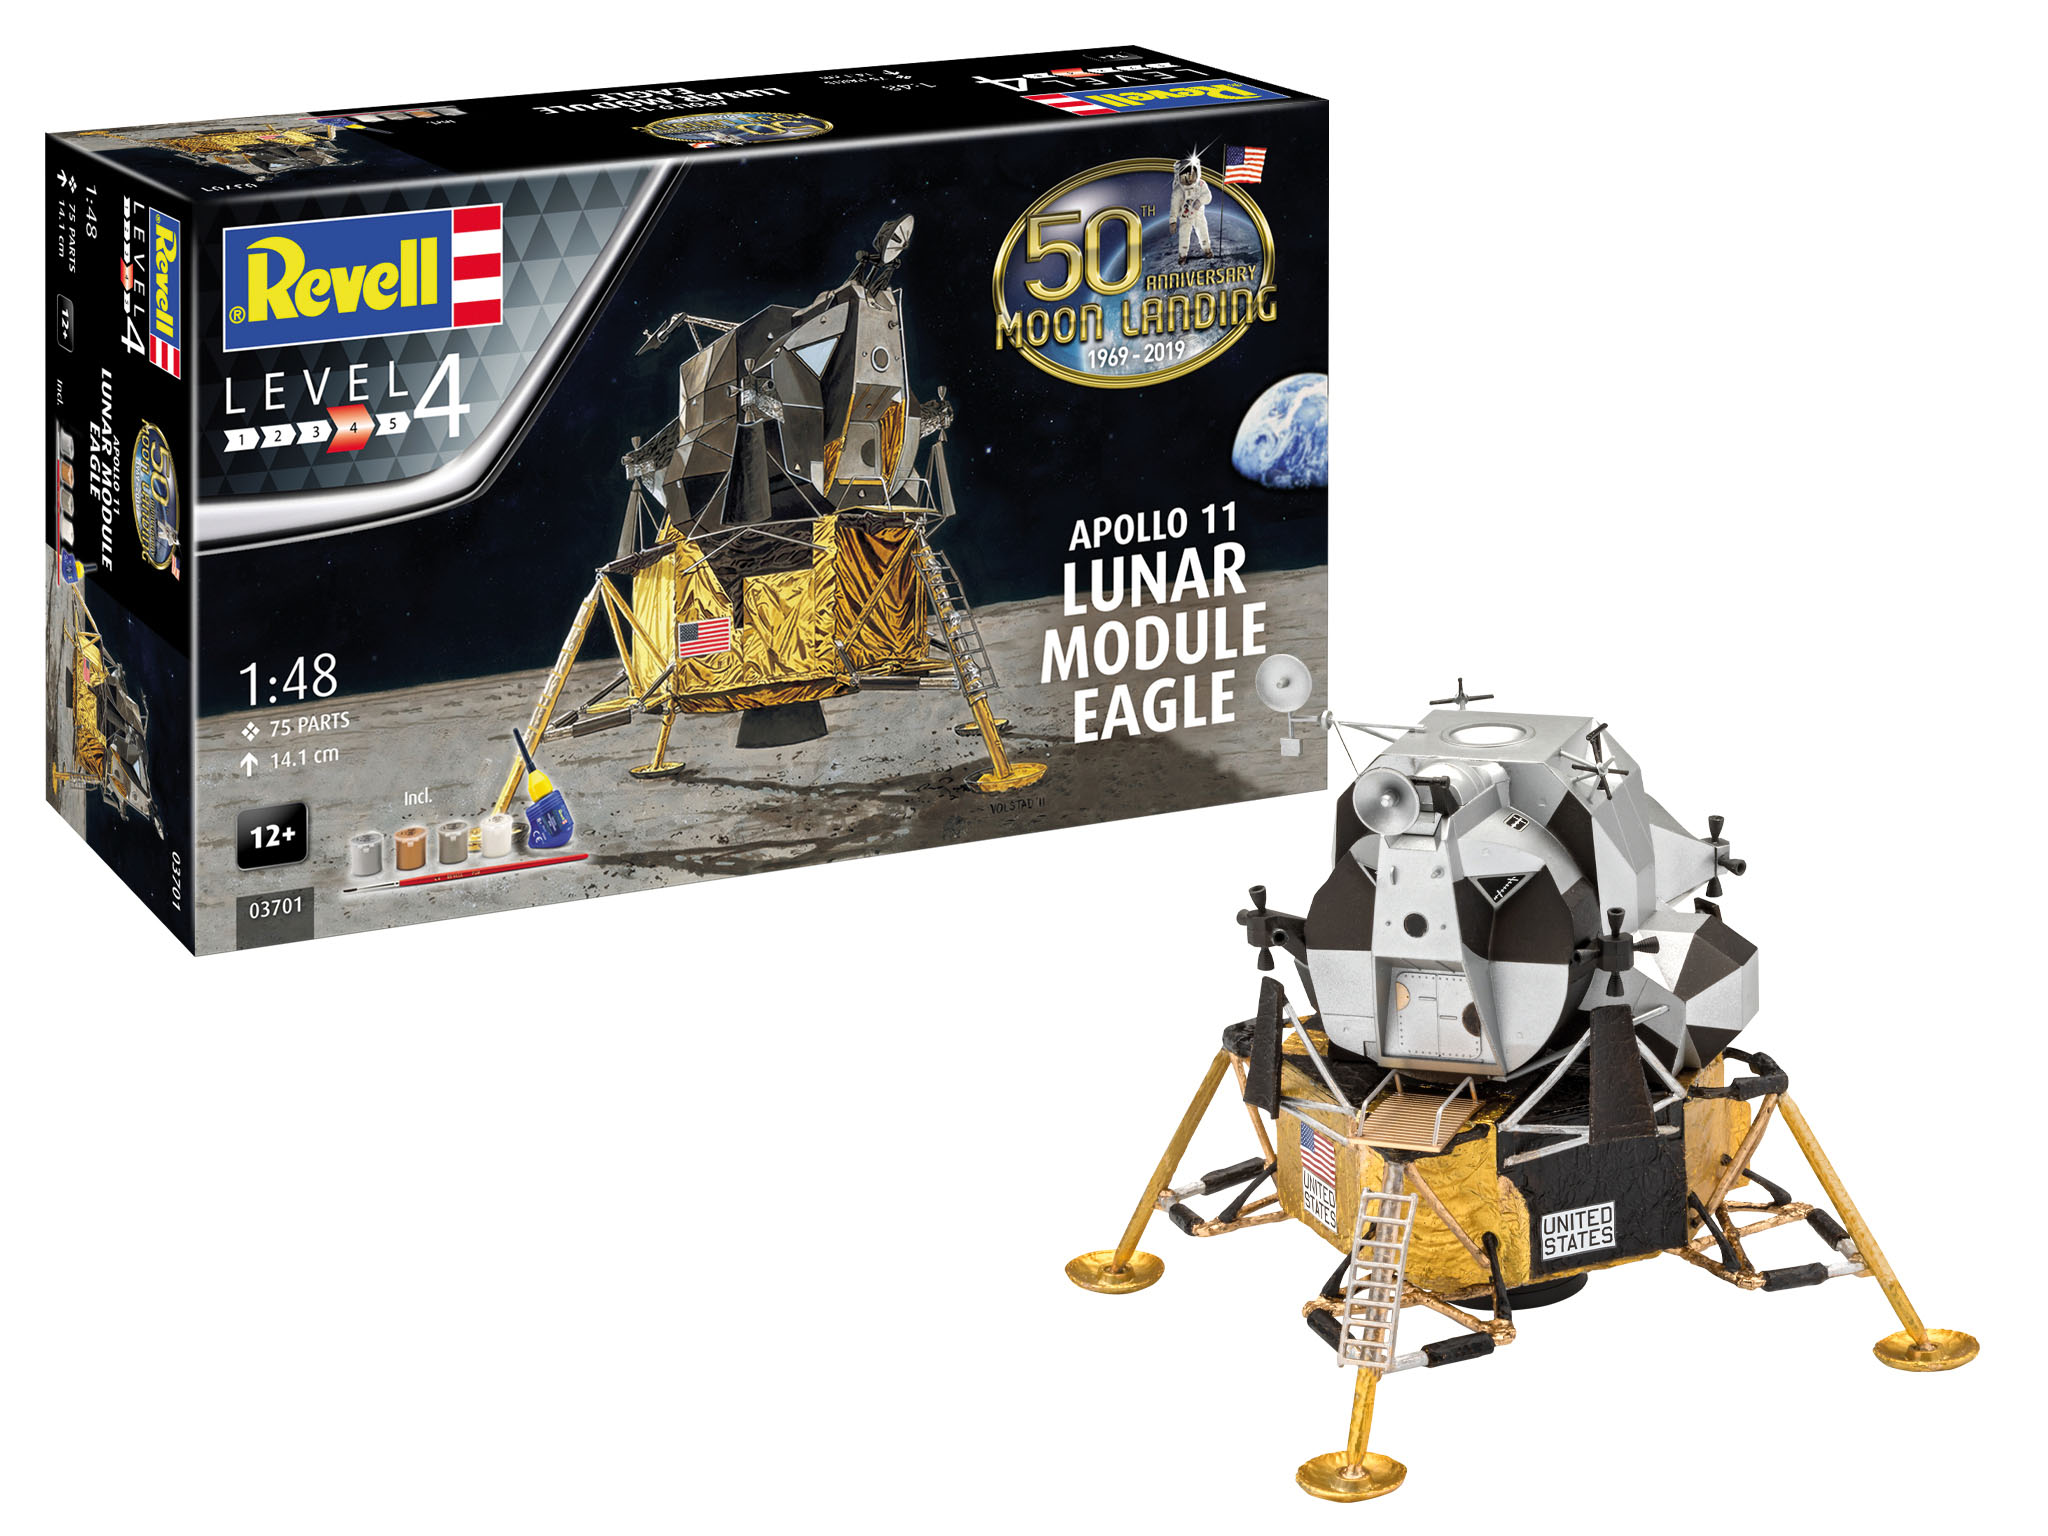 Revell Apollo 11 Lunar Module Eagle 50th Anniversary Moon Landing in 1:48 bouwpakket met lijm en verf